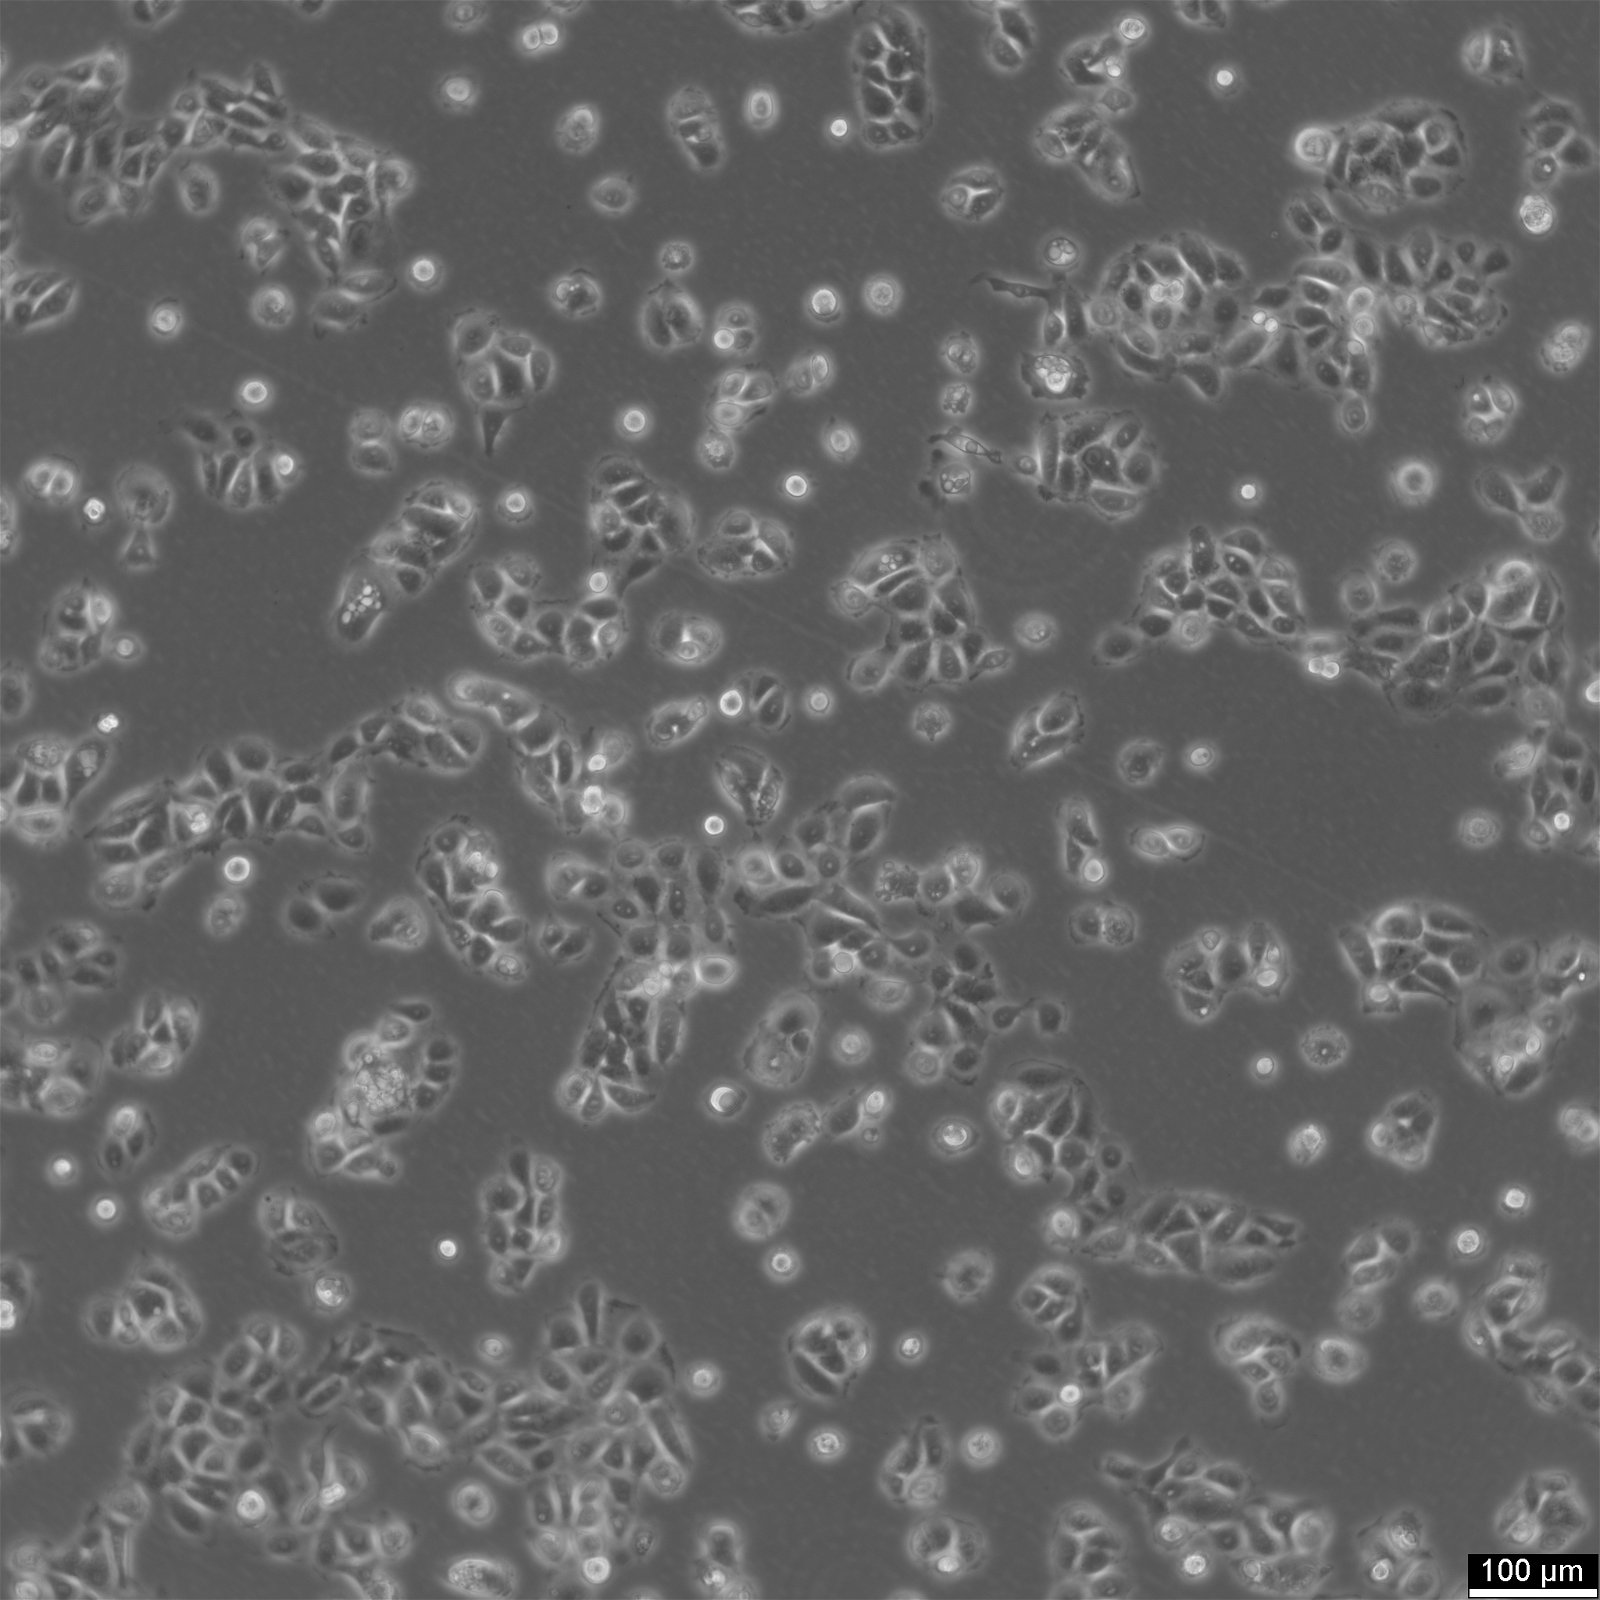 NCI-H292-Zellen